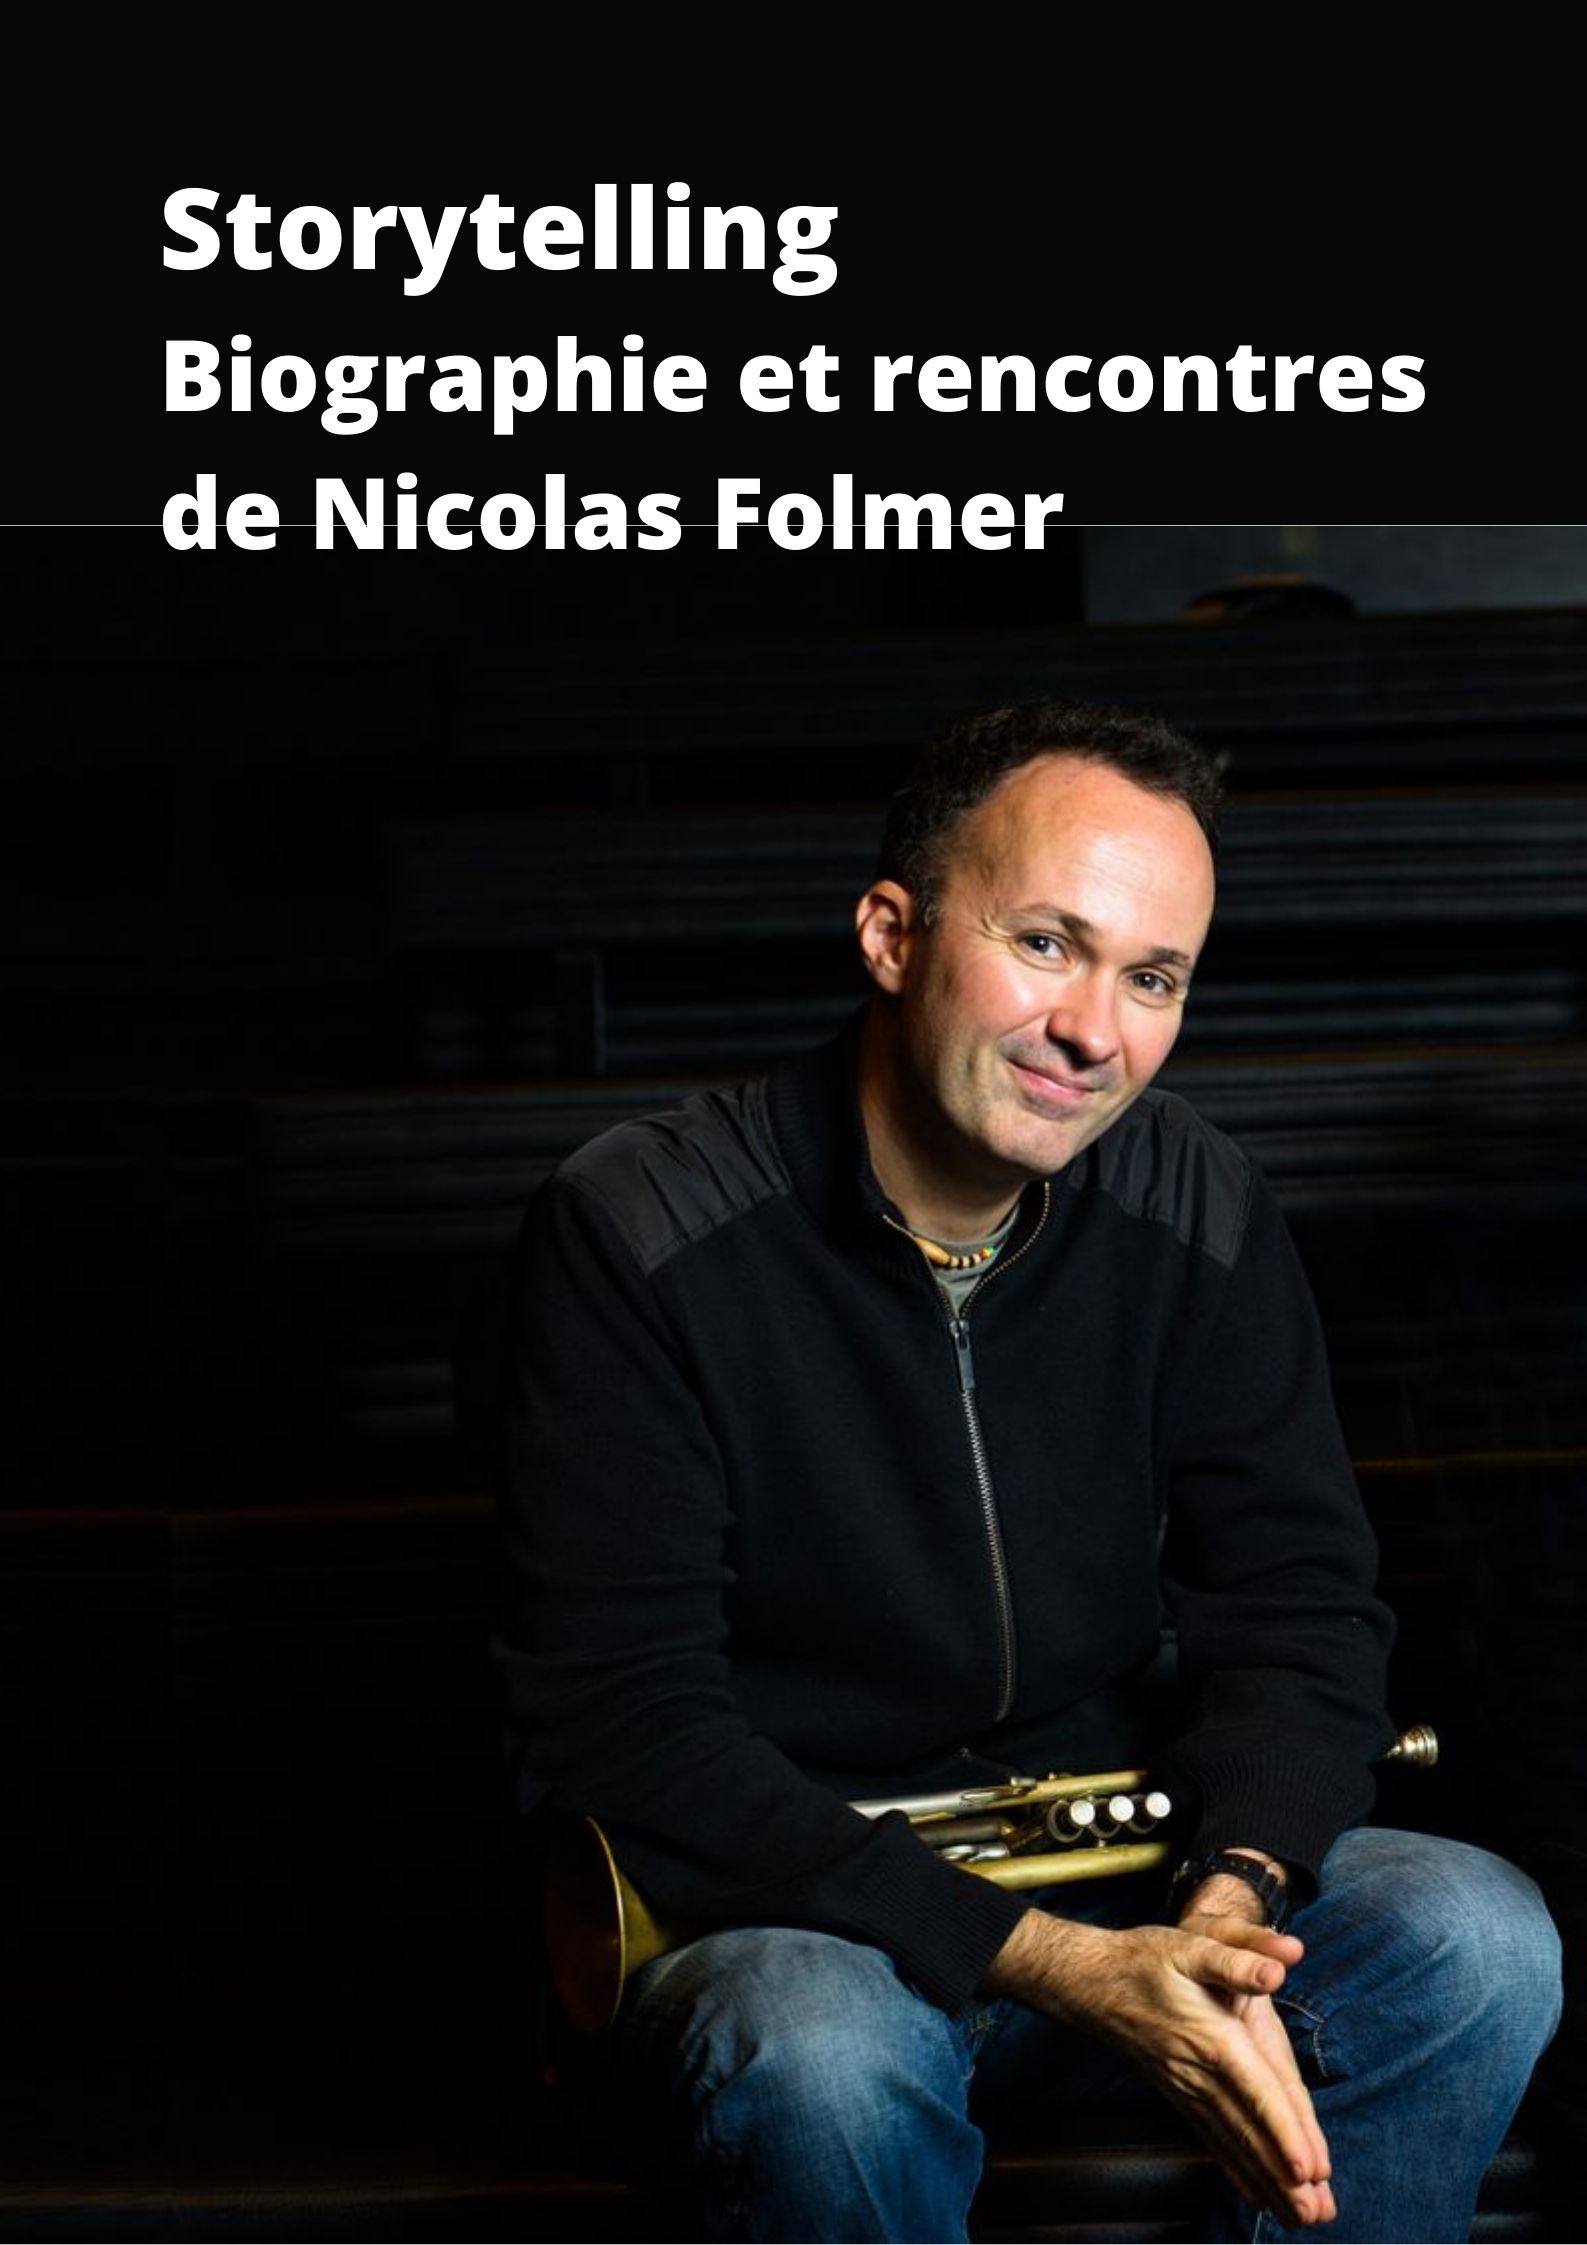 Storytelling biographique et des rencontres de Nicolas Folmer avec les emblèmes du Jazz